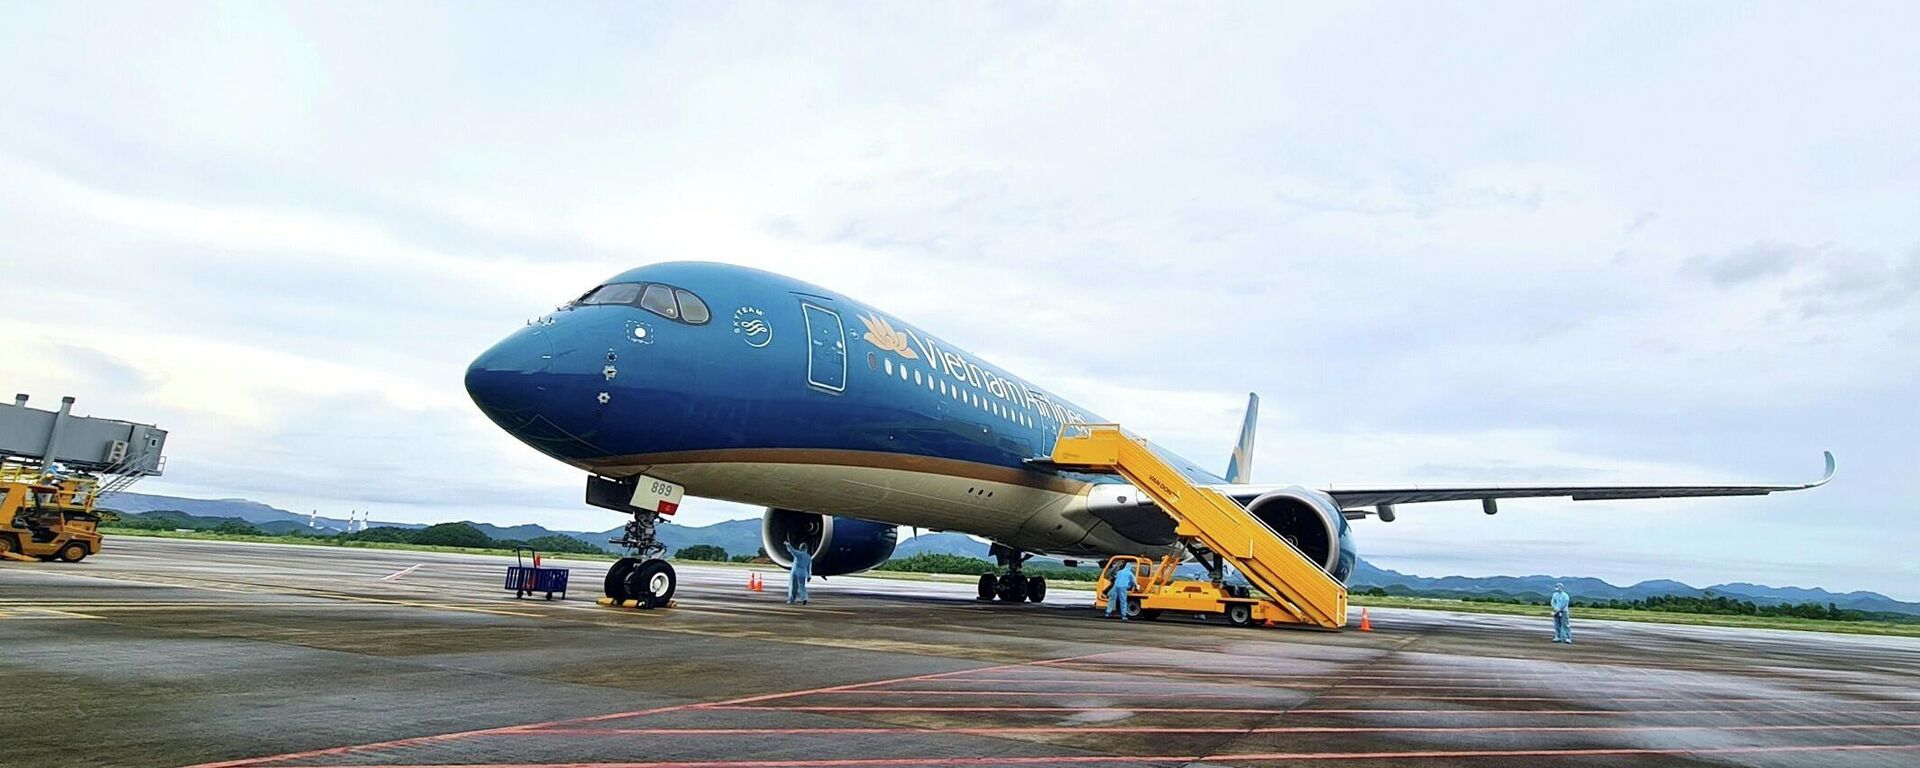 Chuyến bay mang số hiệu VN18 chở 301 hành khách từ Pháp hạ cánh an toàn ngày 23/9 tại sân bay quốc tế Vân Đồn. - Sputnik Việt Nam, 1920, 08.12.2021